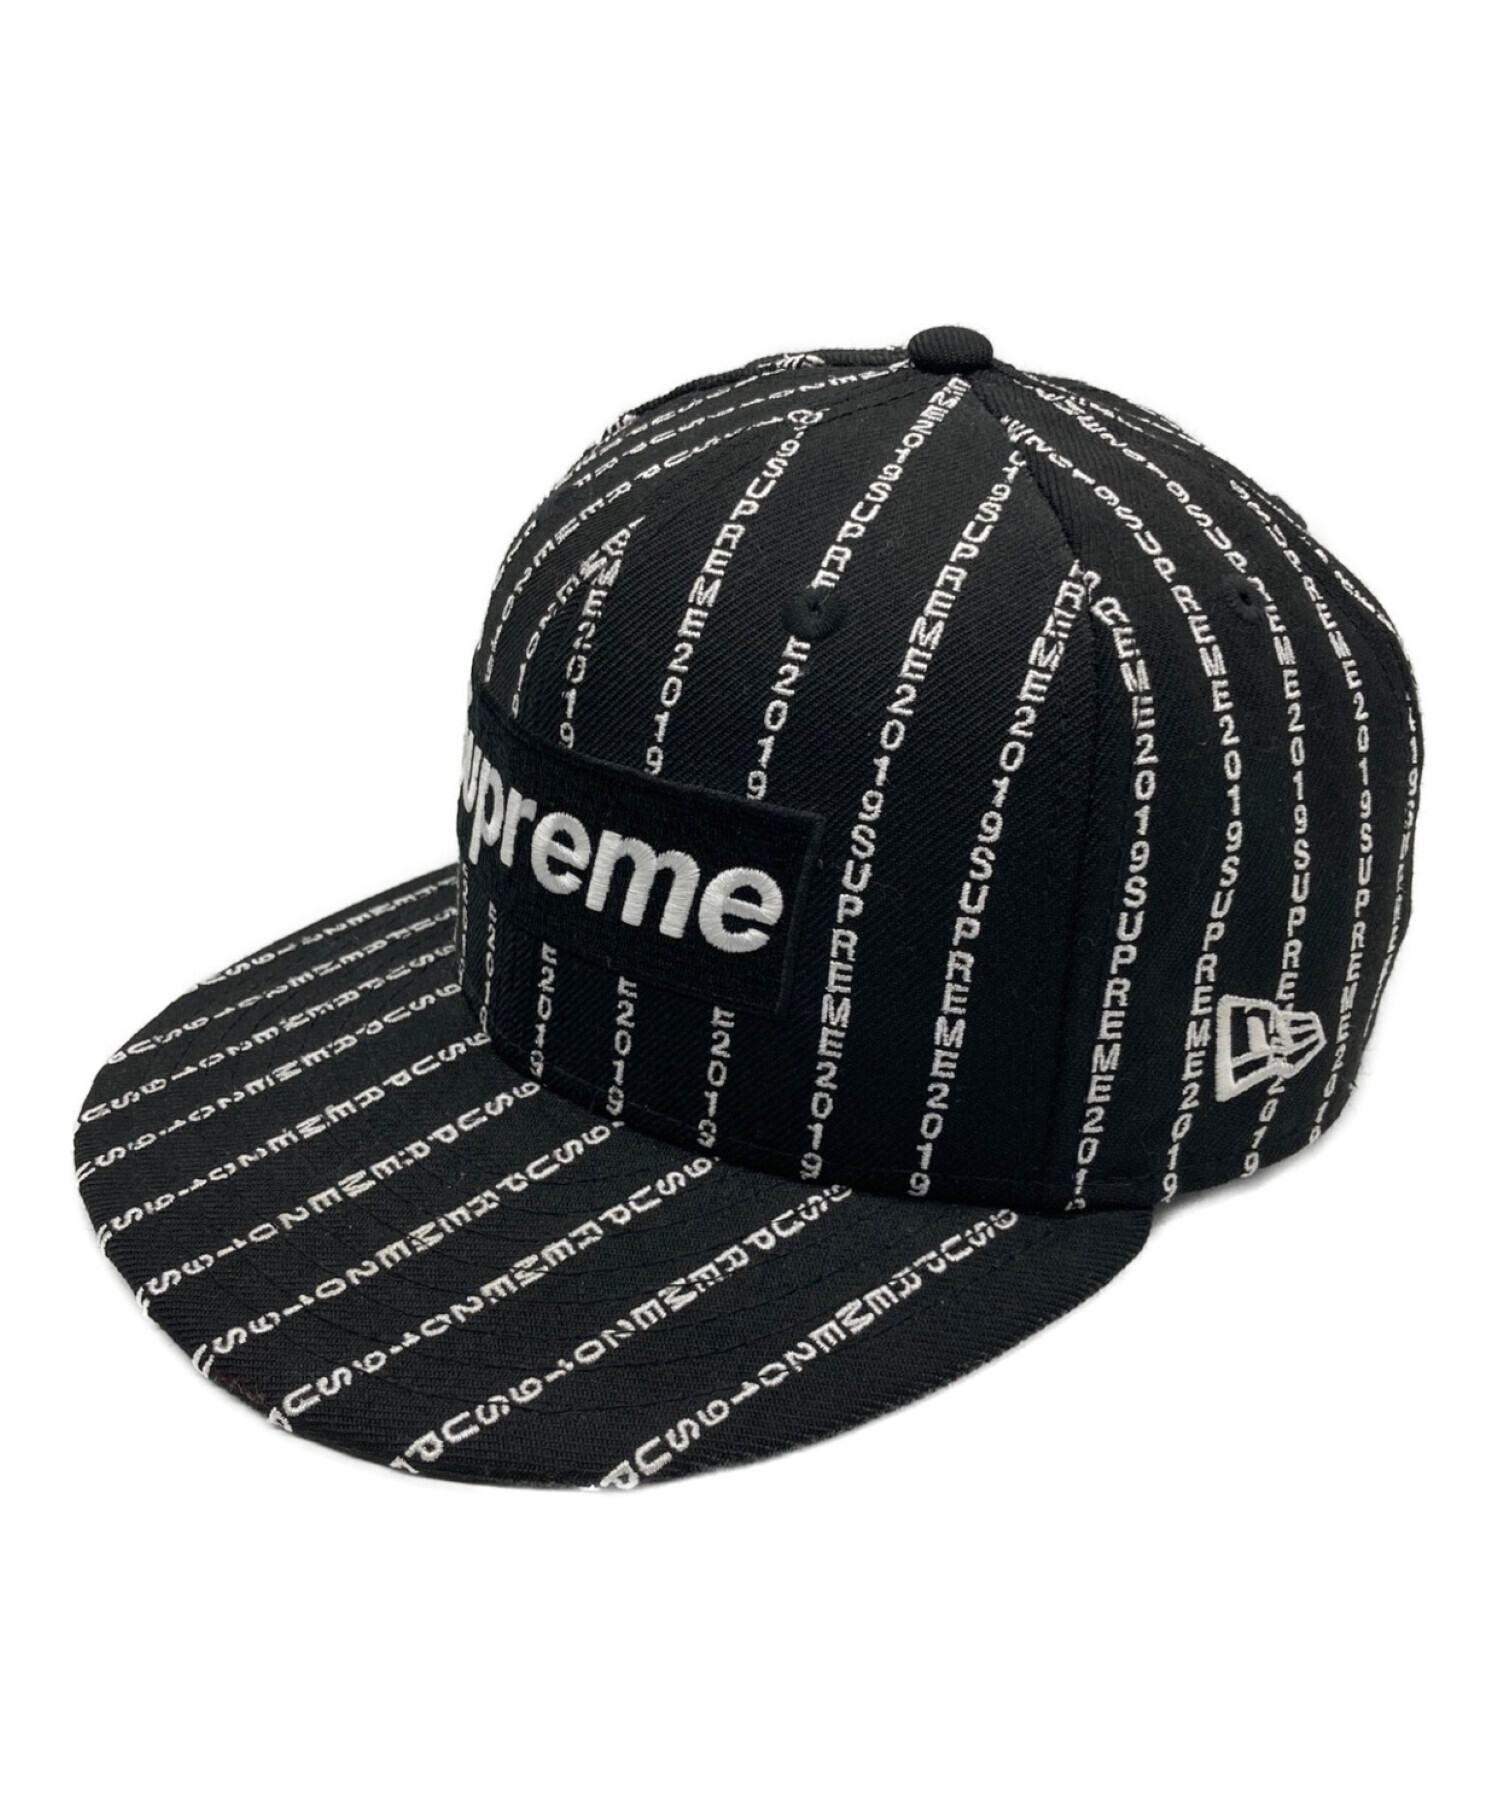 シュプリーム ニューエラ Supreme Text Stripe New Era帽子